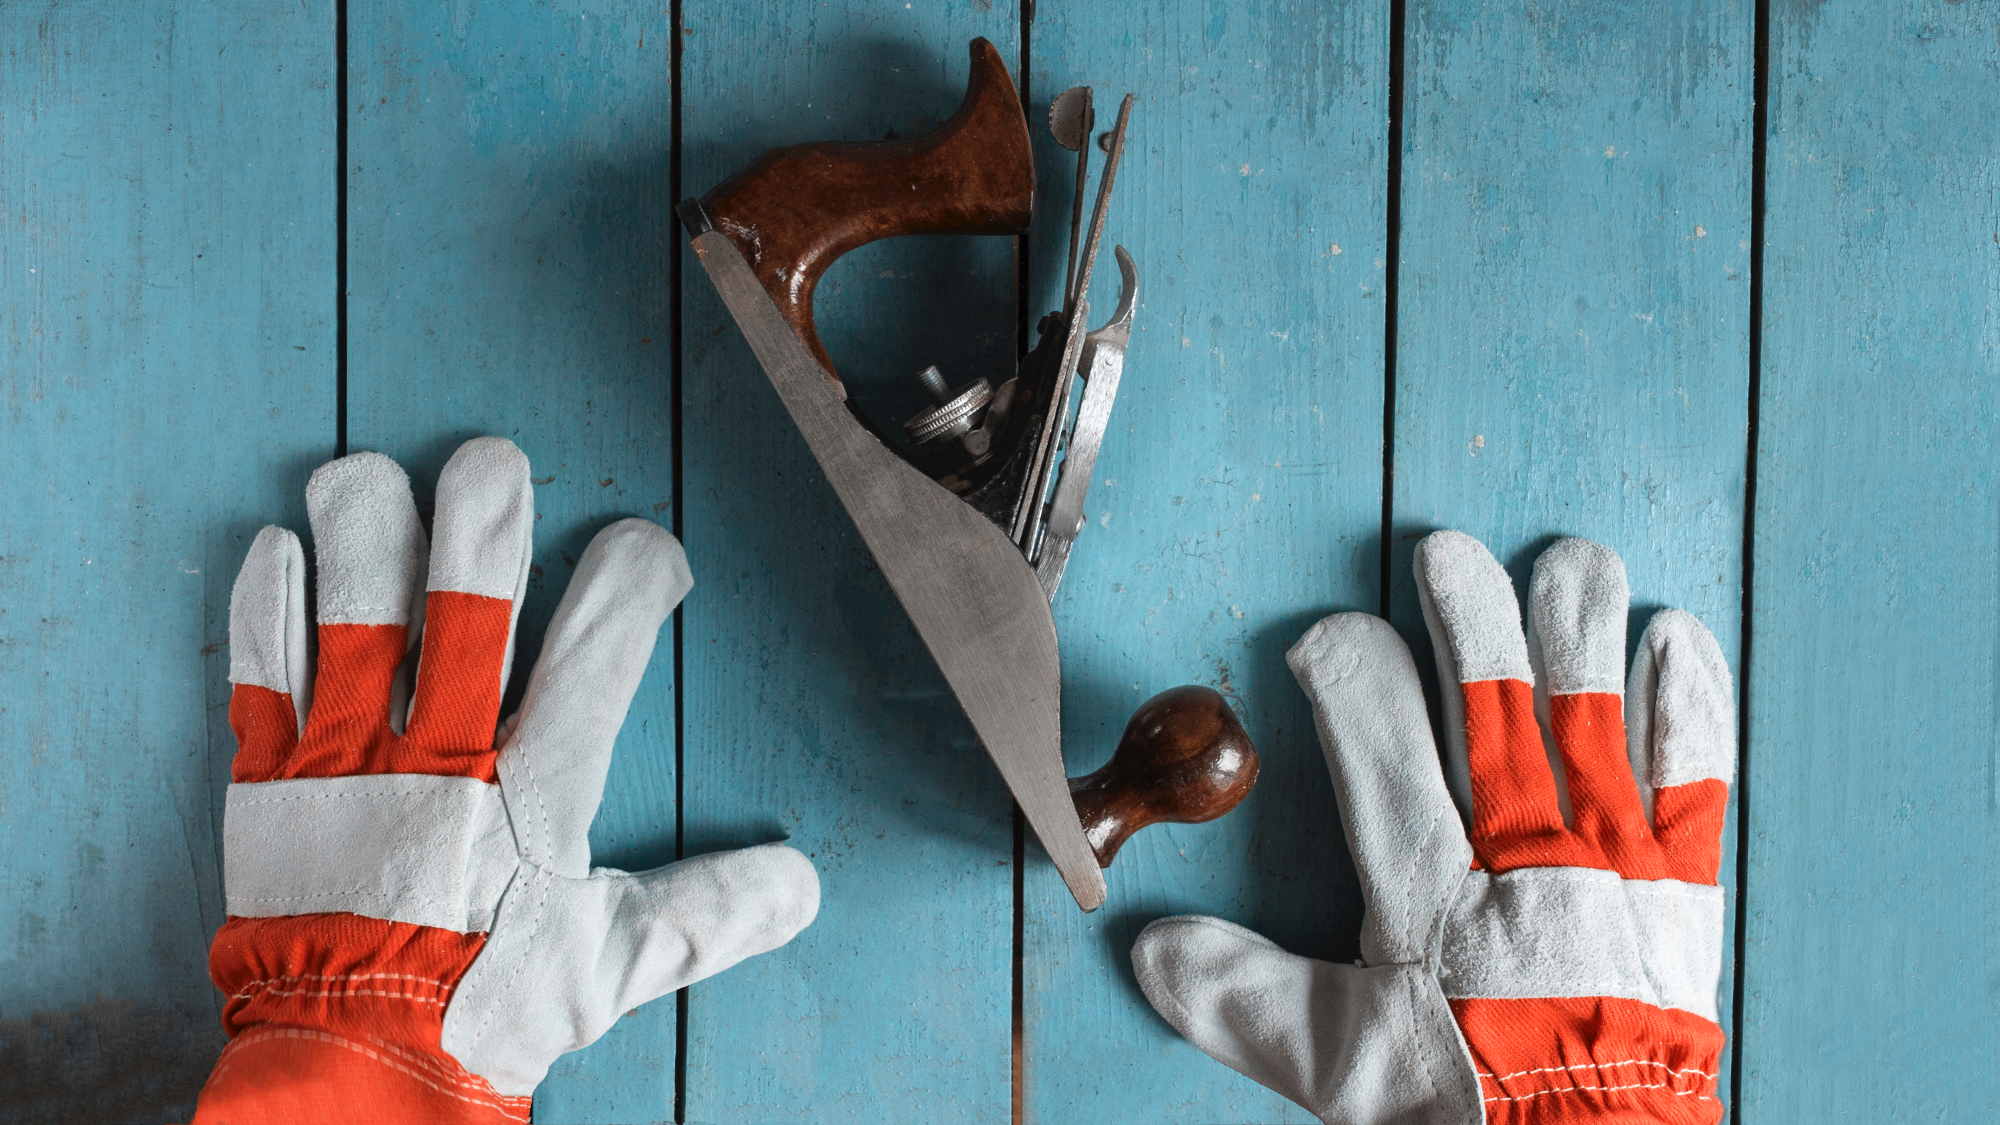 Delovne rokavice in barvanje nadstreška